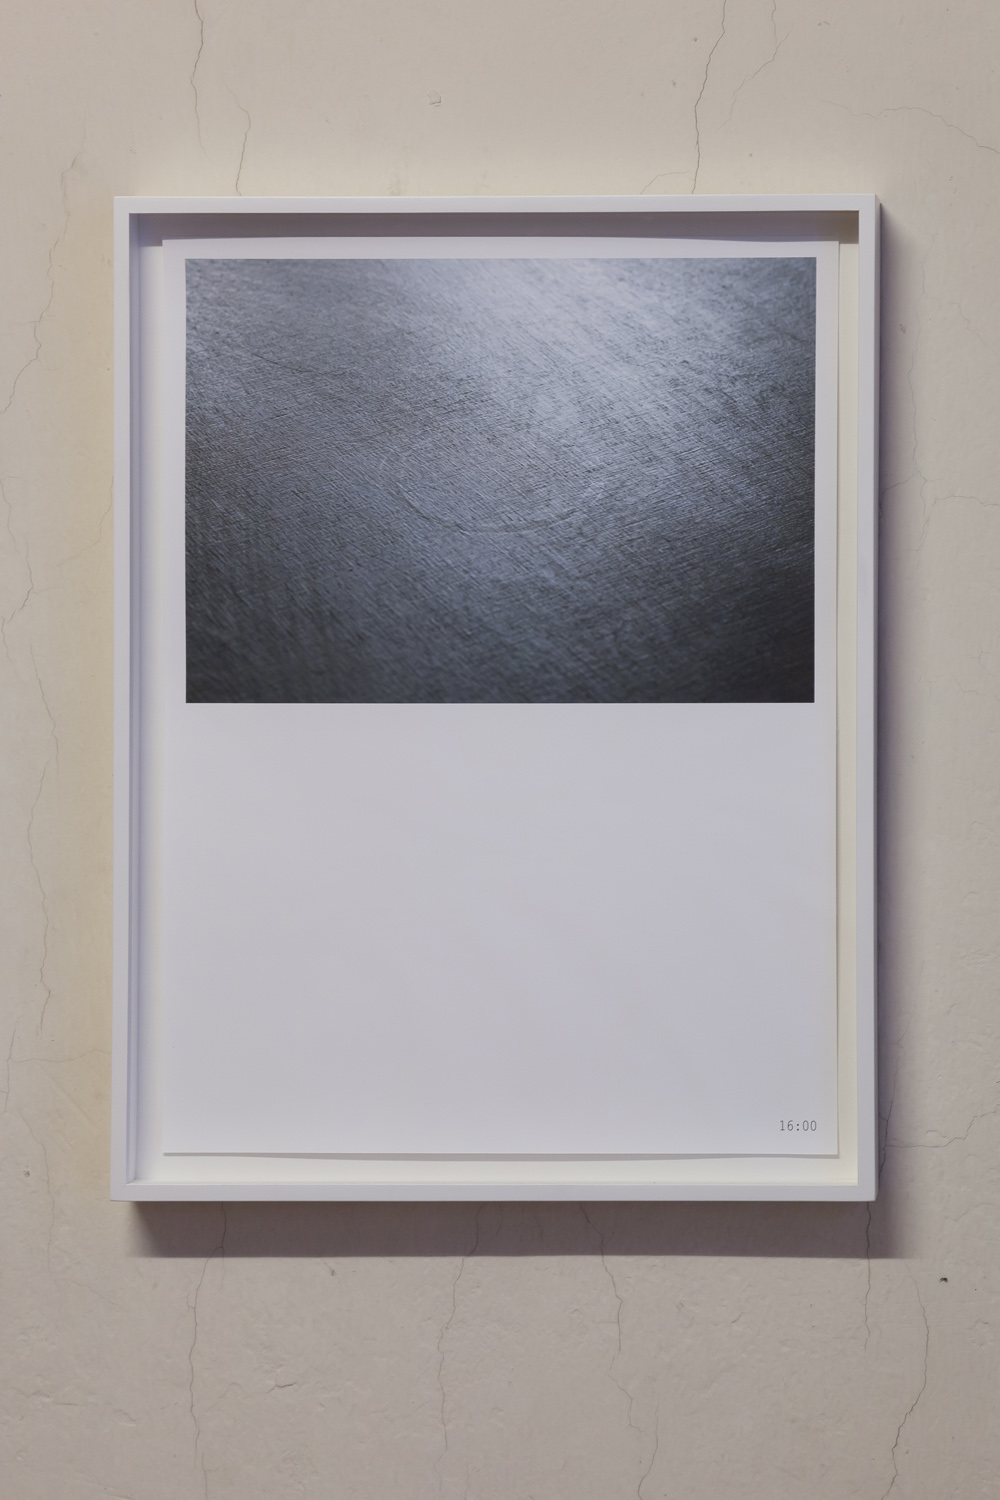 Mikko RikalaEvaporation of a circle, 2017Pigment print40 x 20 cm eachED 1/5 + 2 AP